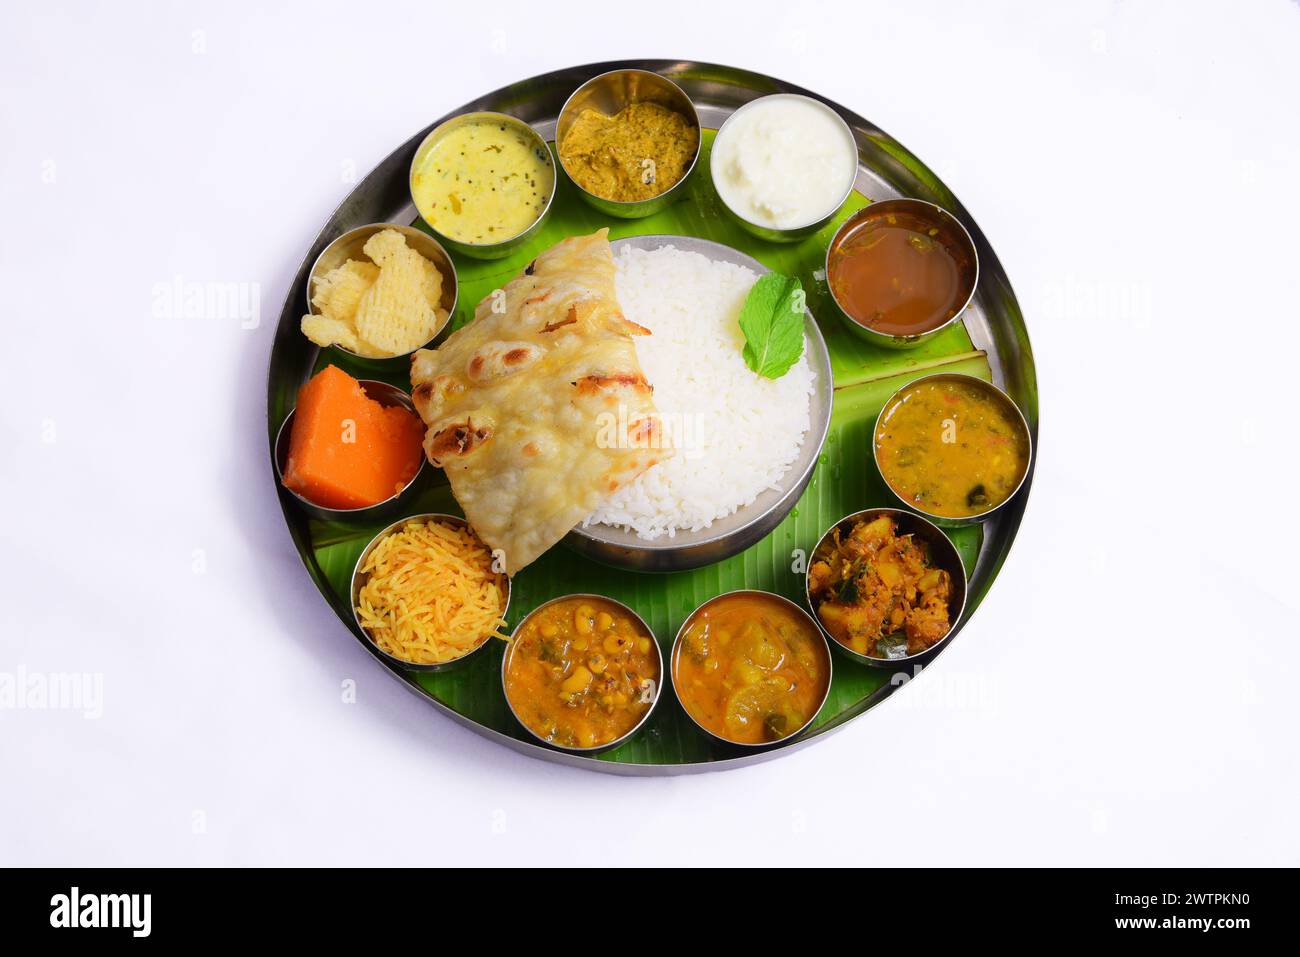 Les repas sud-indiens se composent d'un plateau composé d'une préparation de légumes secs, d'une préparation de légumes de sauce, dal, rasam, chapati, riz, pappadum, et de caillé. Banque D'Images